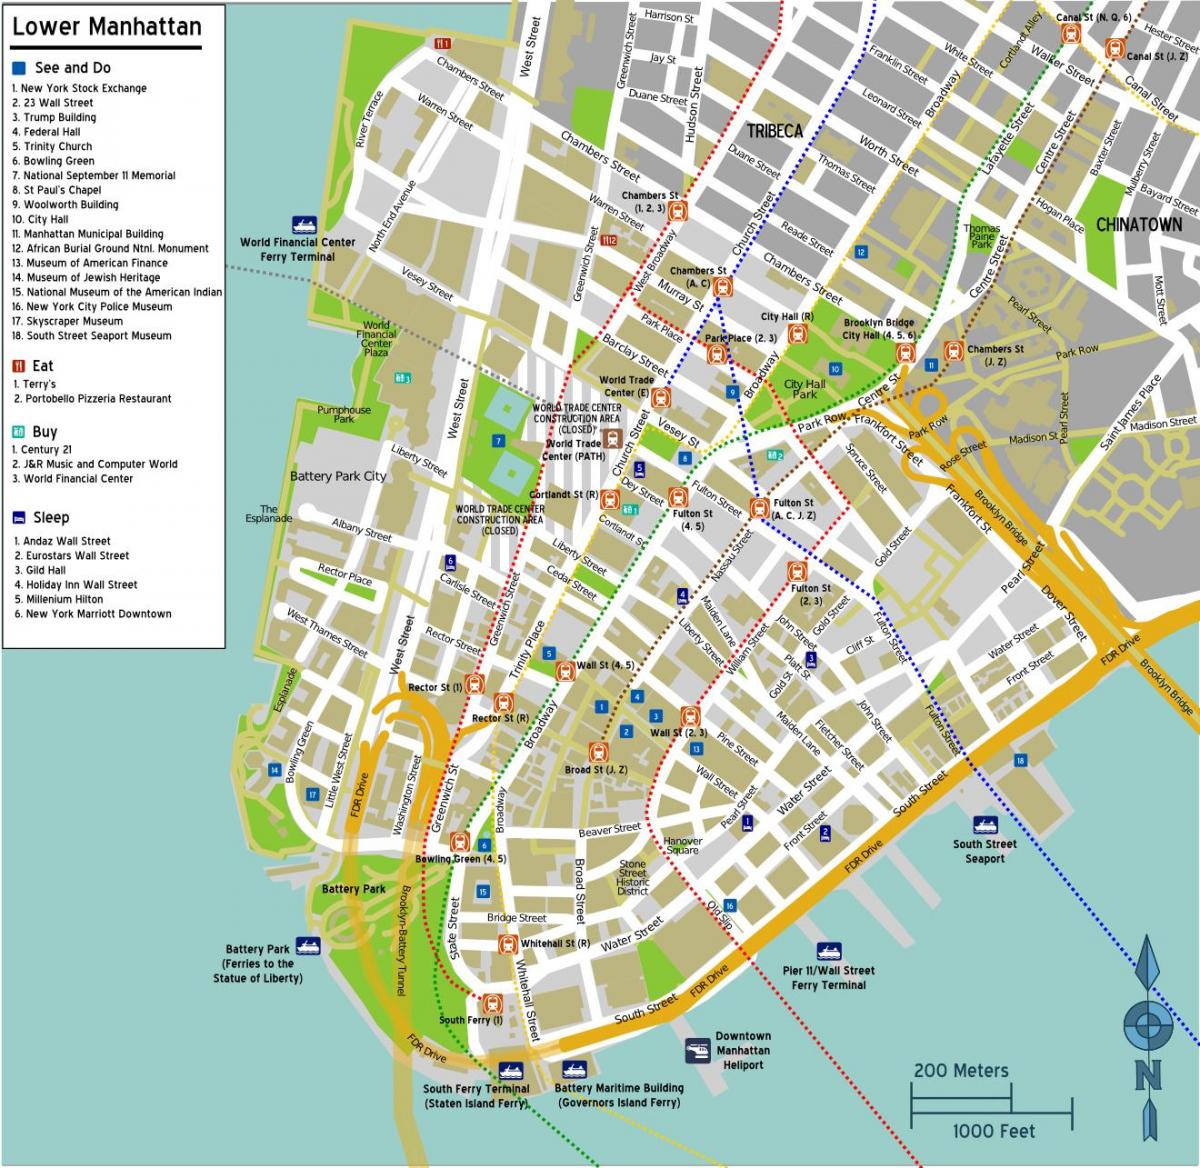 mapa da baixa de Manhattan, com nomes de ruas